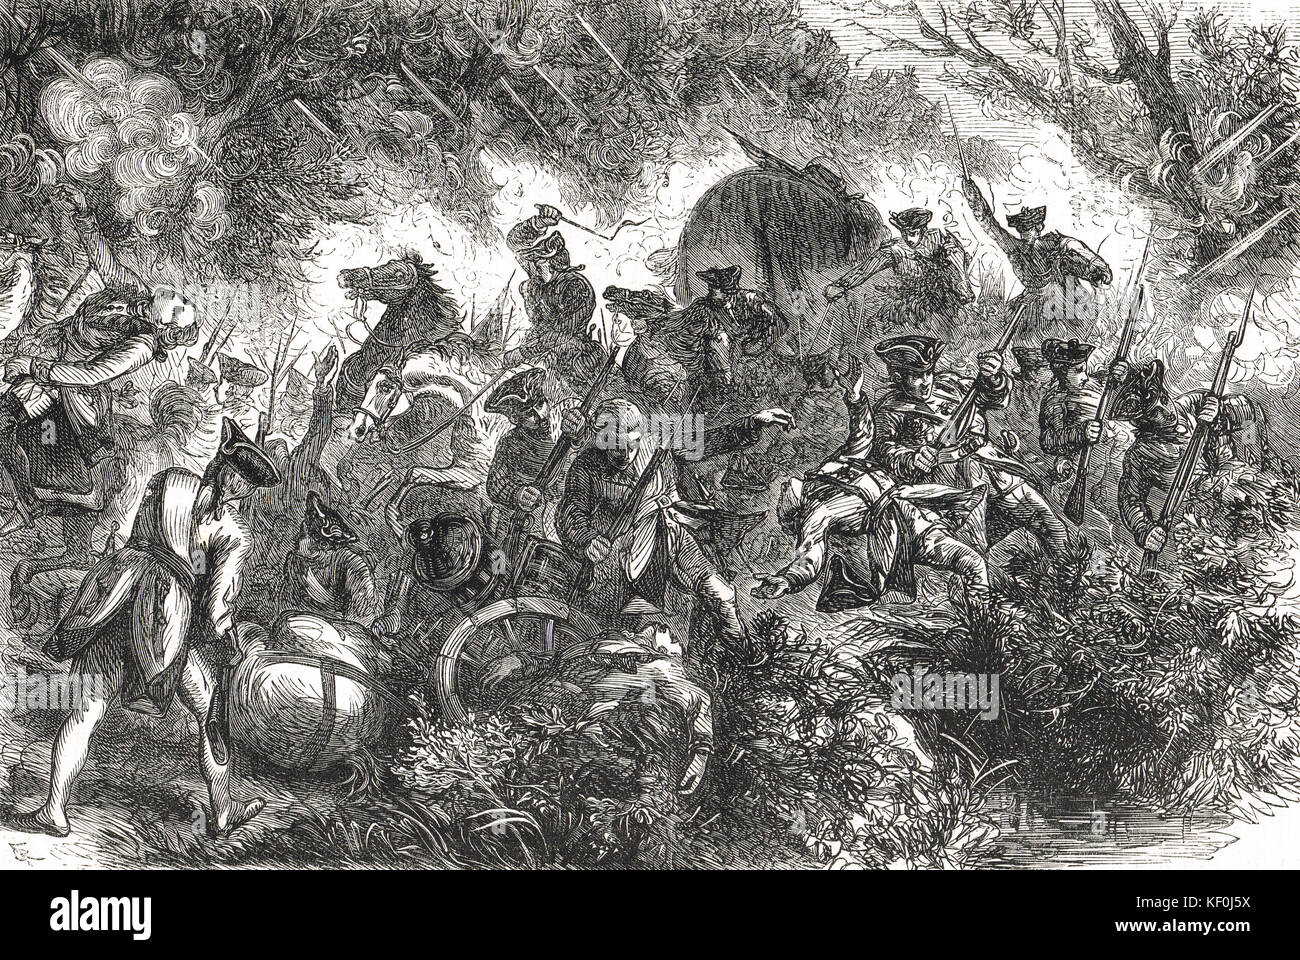 Schlacht der Monongahela, 9. Juli 1755 (Braddocks Niederlage). Stockfoto